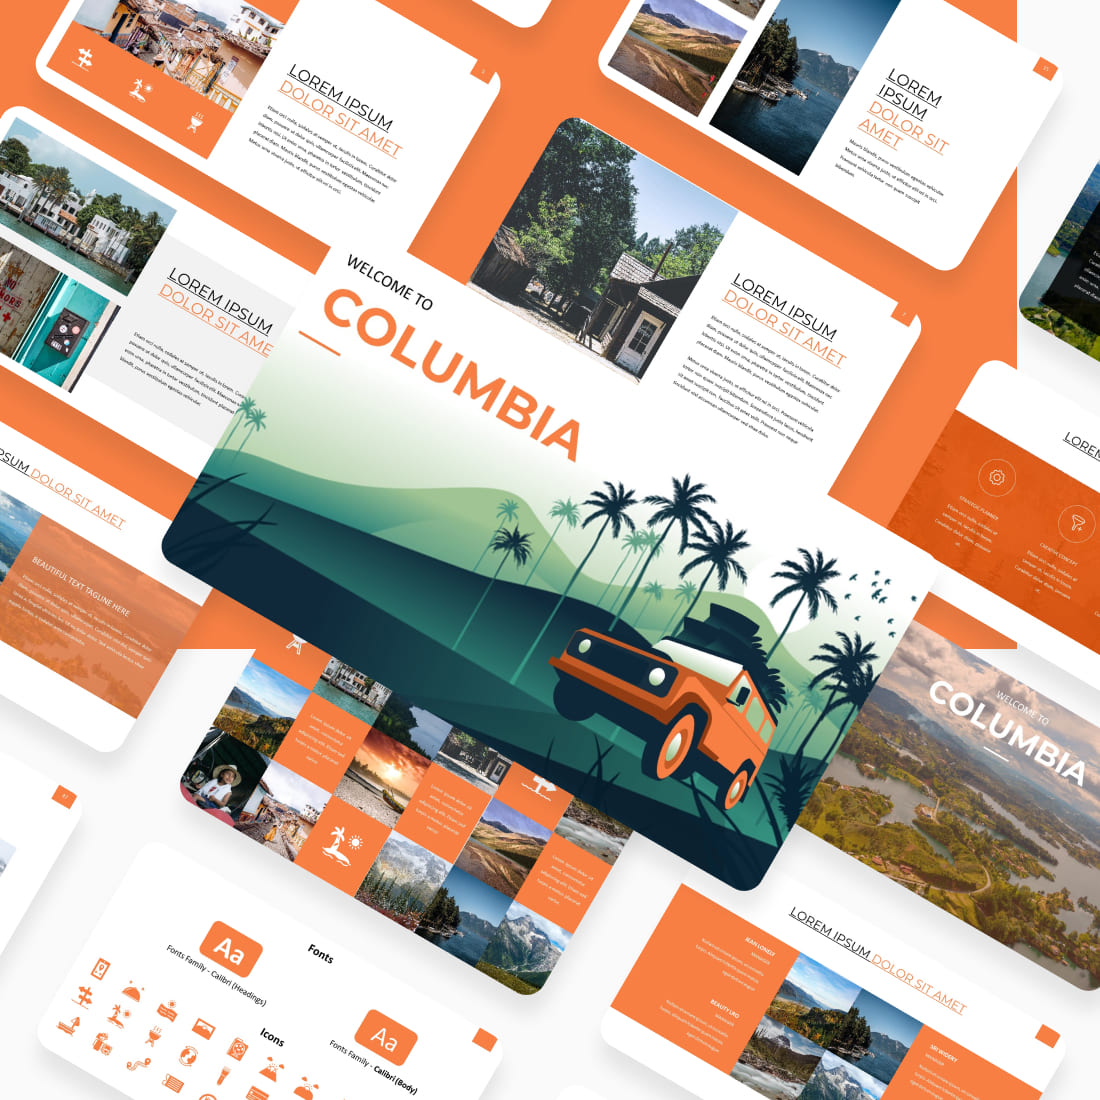 Сolombia Travel Presentstion: 50 Slides PPTX, KEY, Google Slides cover image.